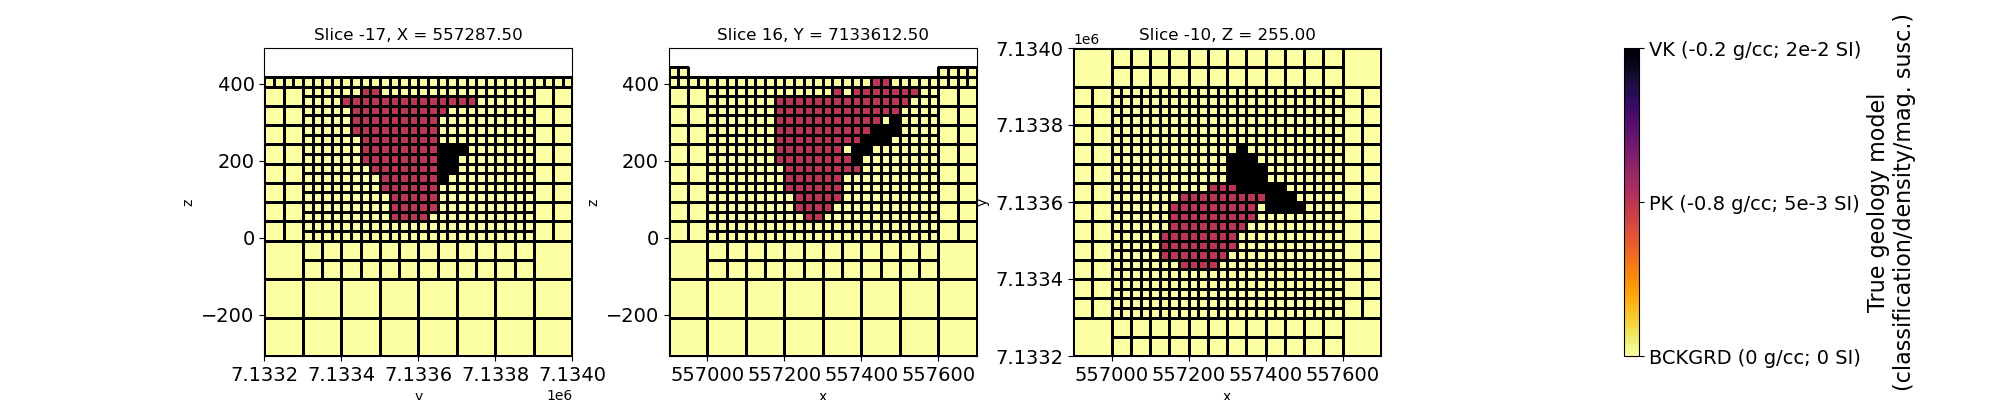 Slice -17, X = 557287.50, Slice 16, Y = 7133612.50, Slice -10, Z = 255.00